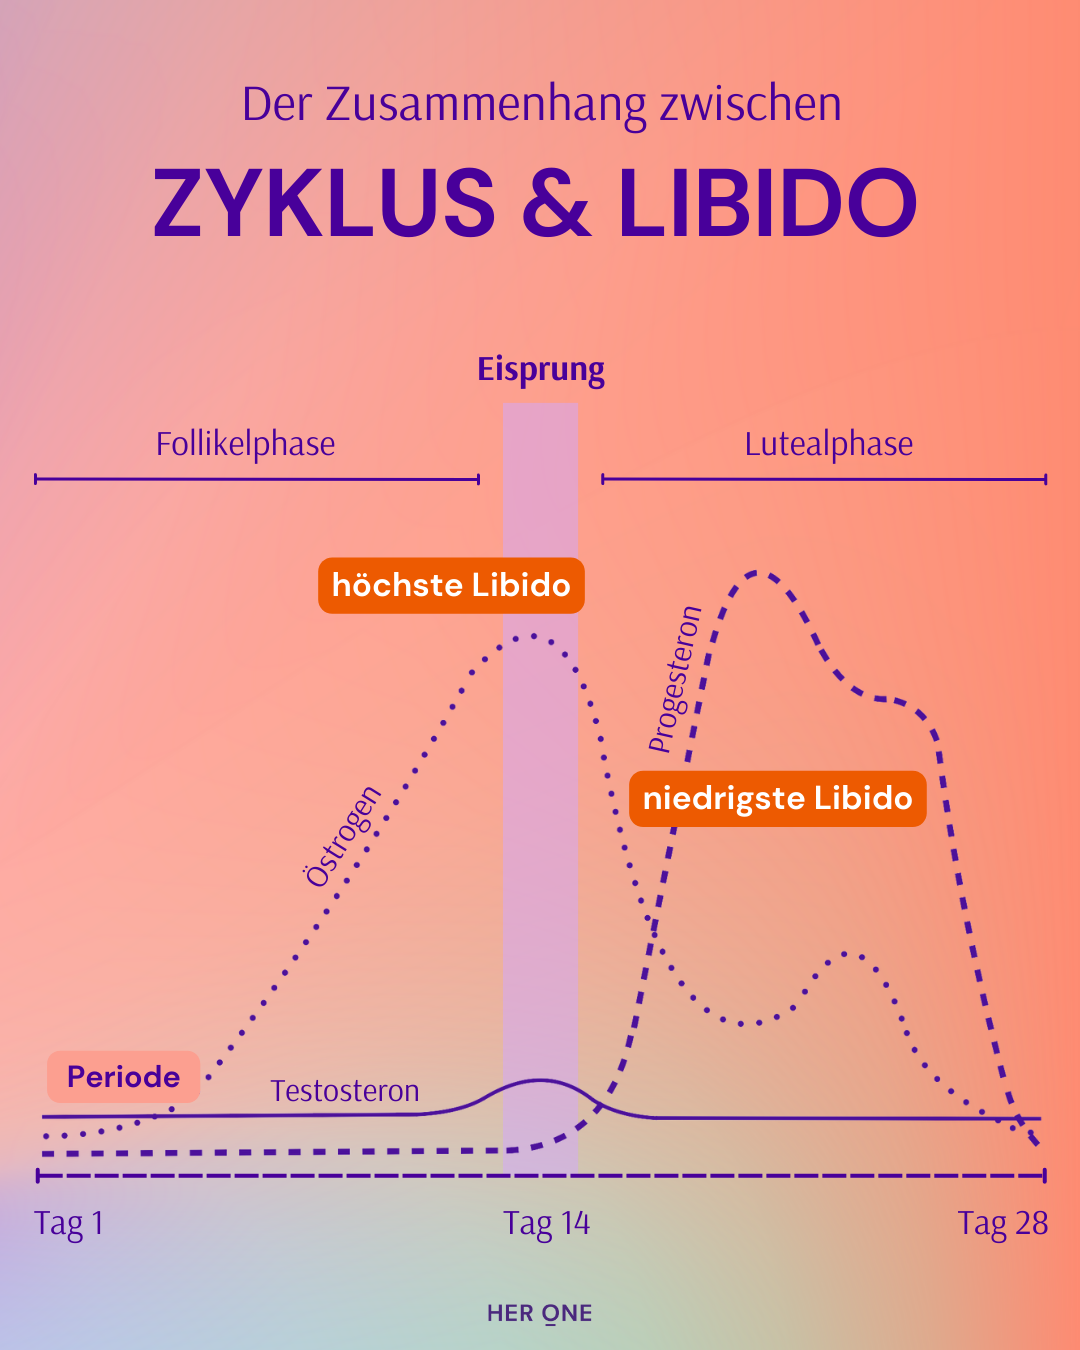 Grafische Abbildung des Zusammenhangs zwischen dem weiblichen Zyklus, Östrogen-, Progesteron- und Testosteronspiegel und der weiblichen Libido.